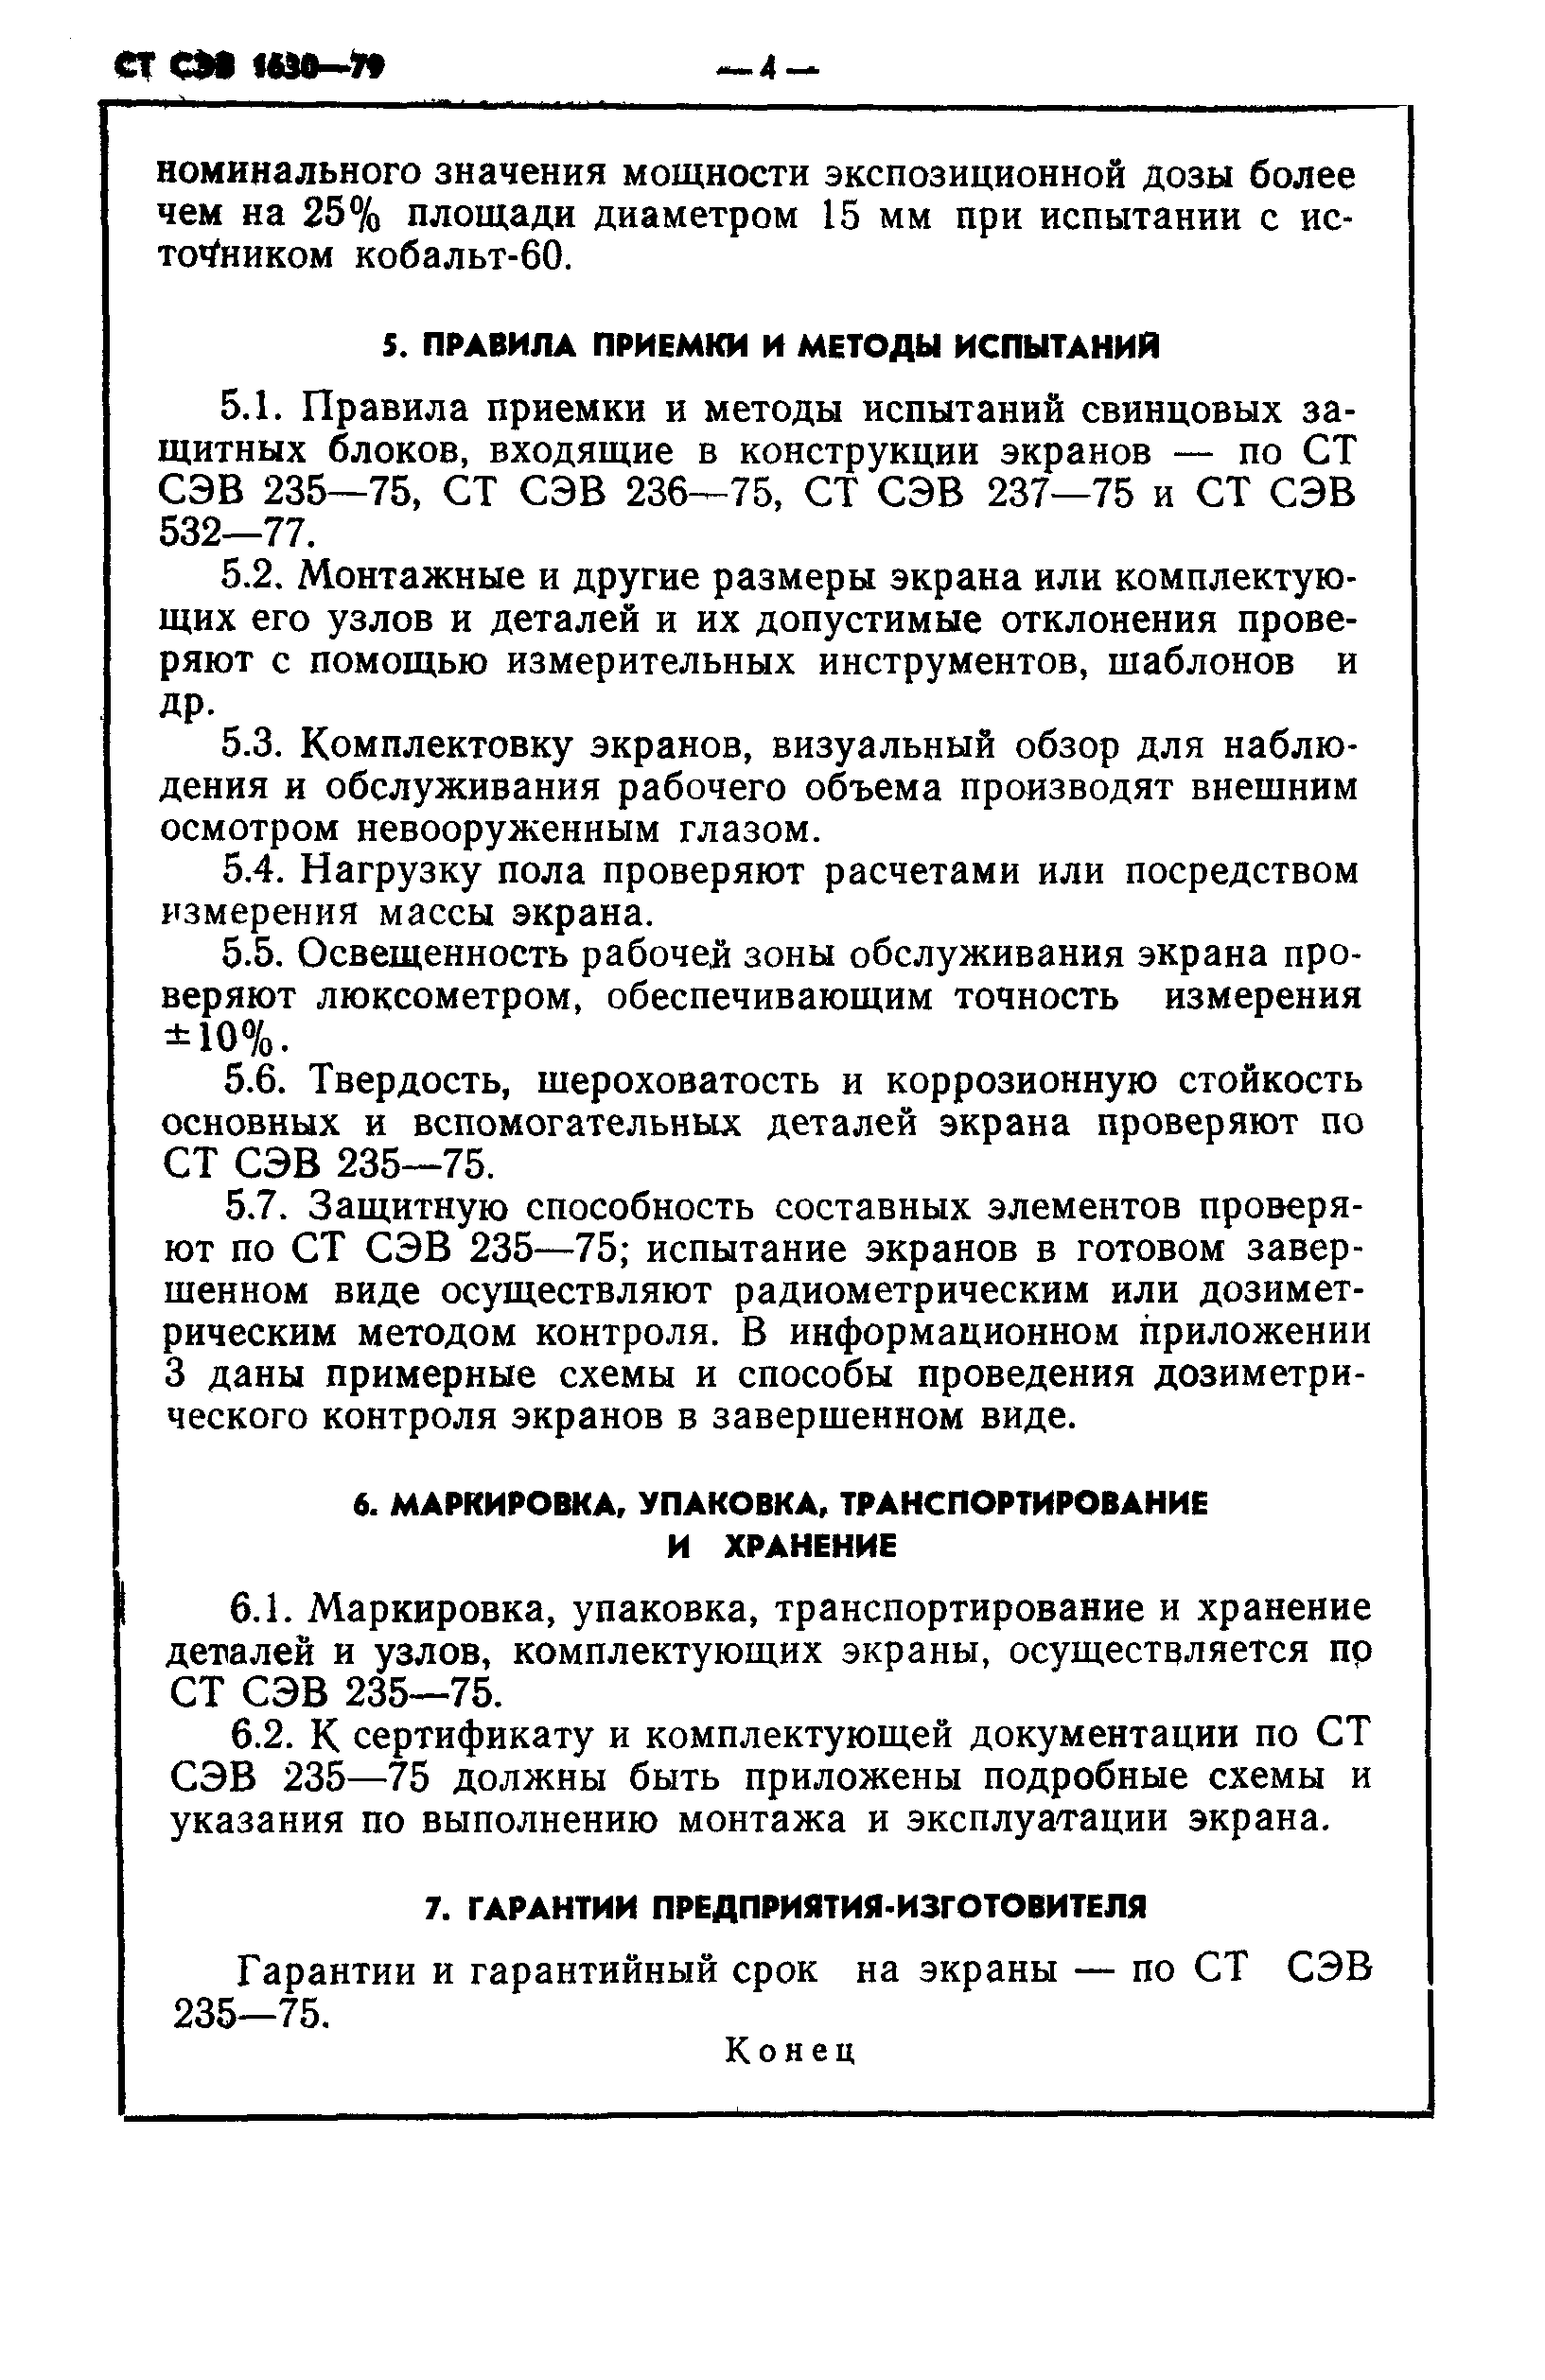 СТ СЭВ 1630-79